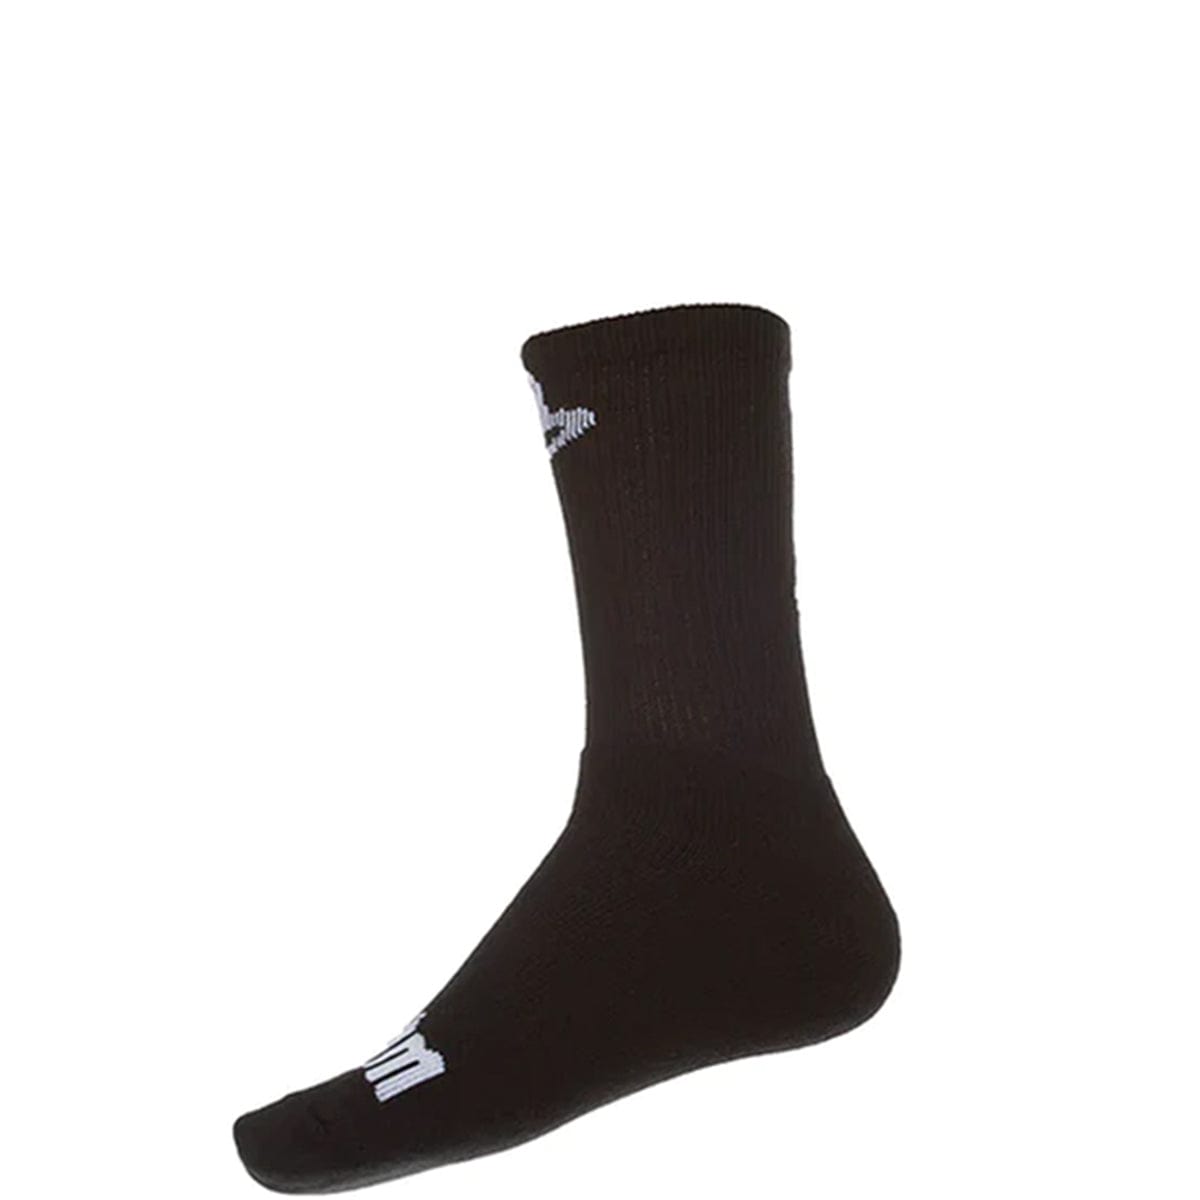 ICECREAM Socks BLACK / O/S WILLIAMS SOCK